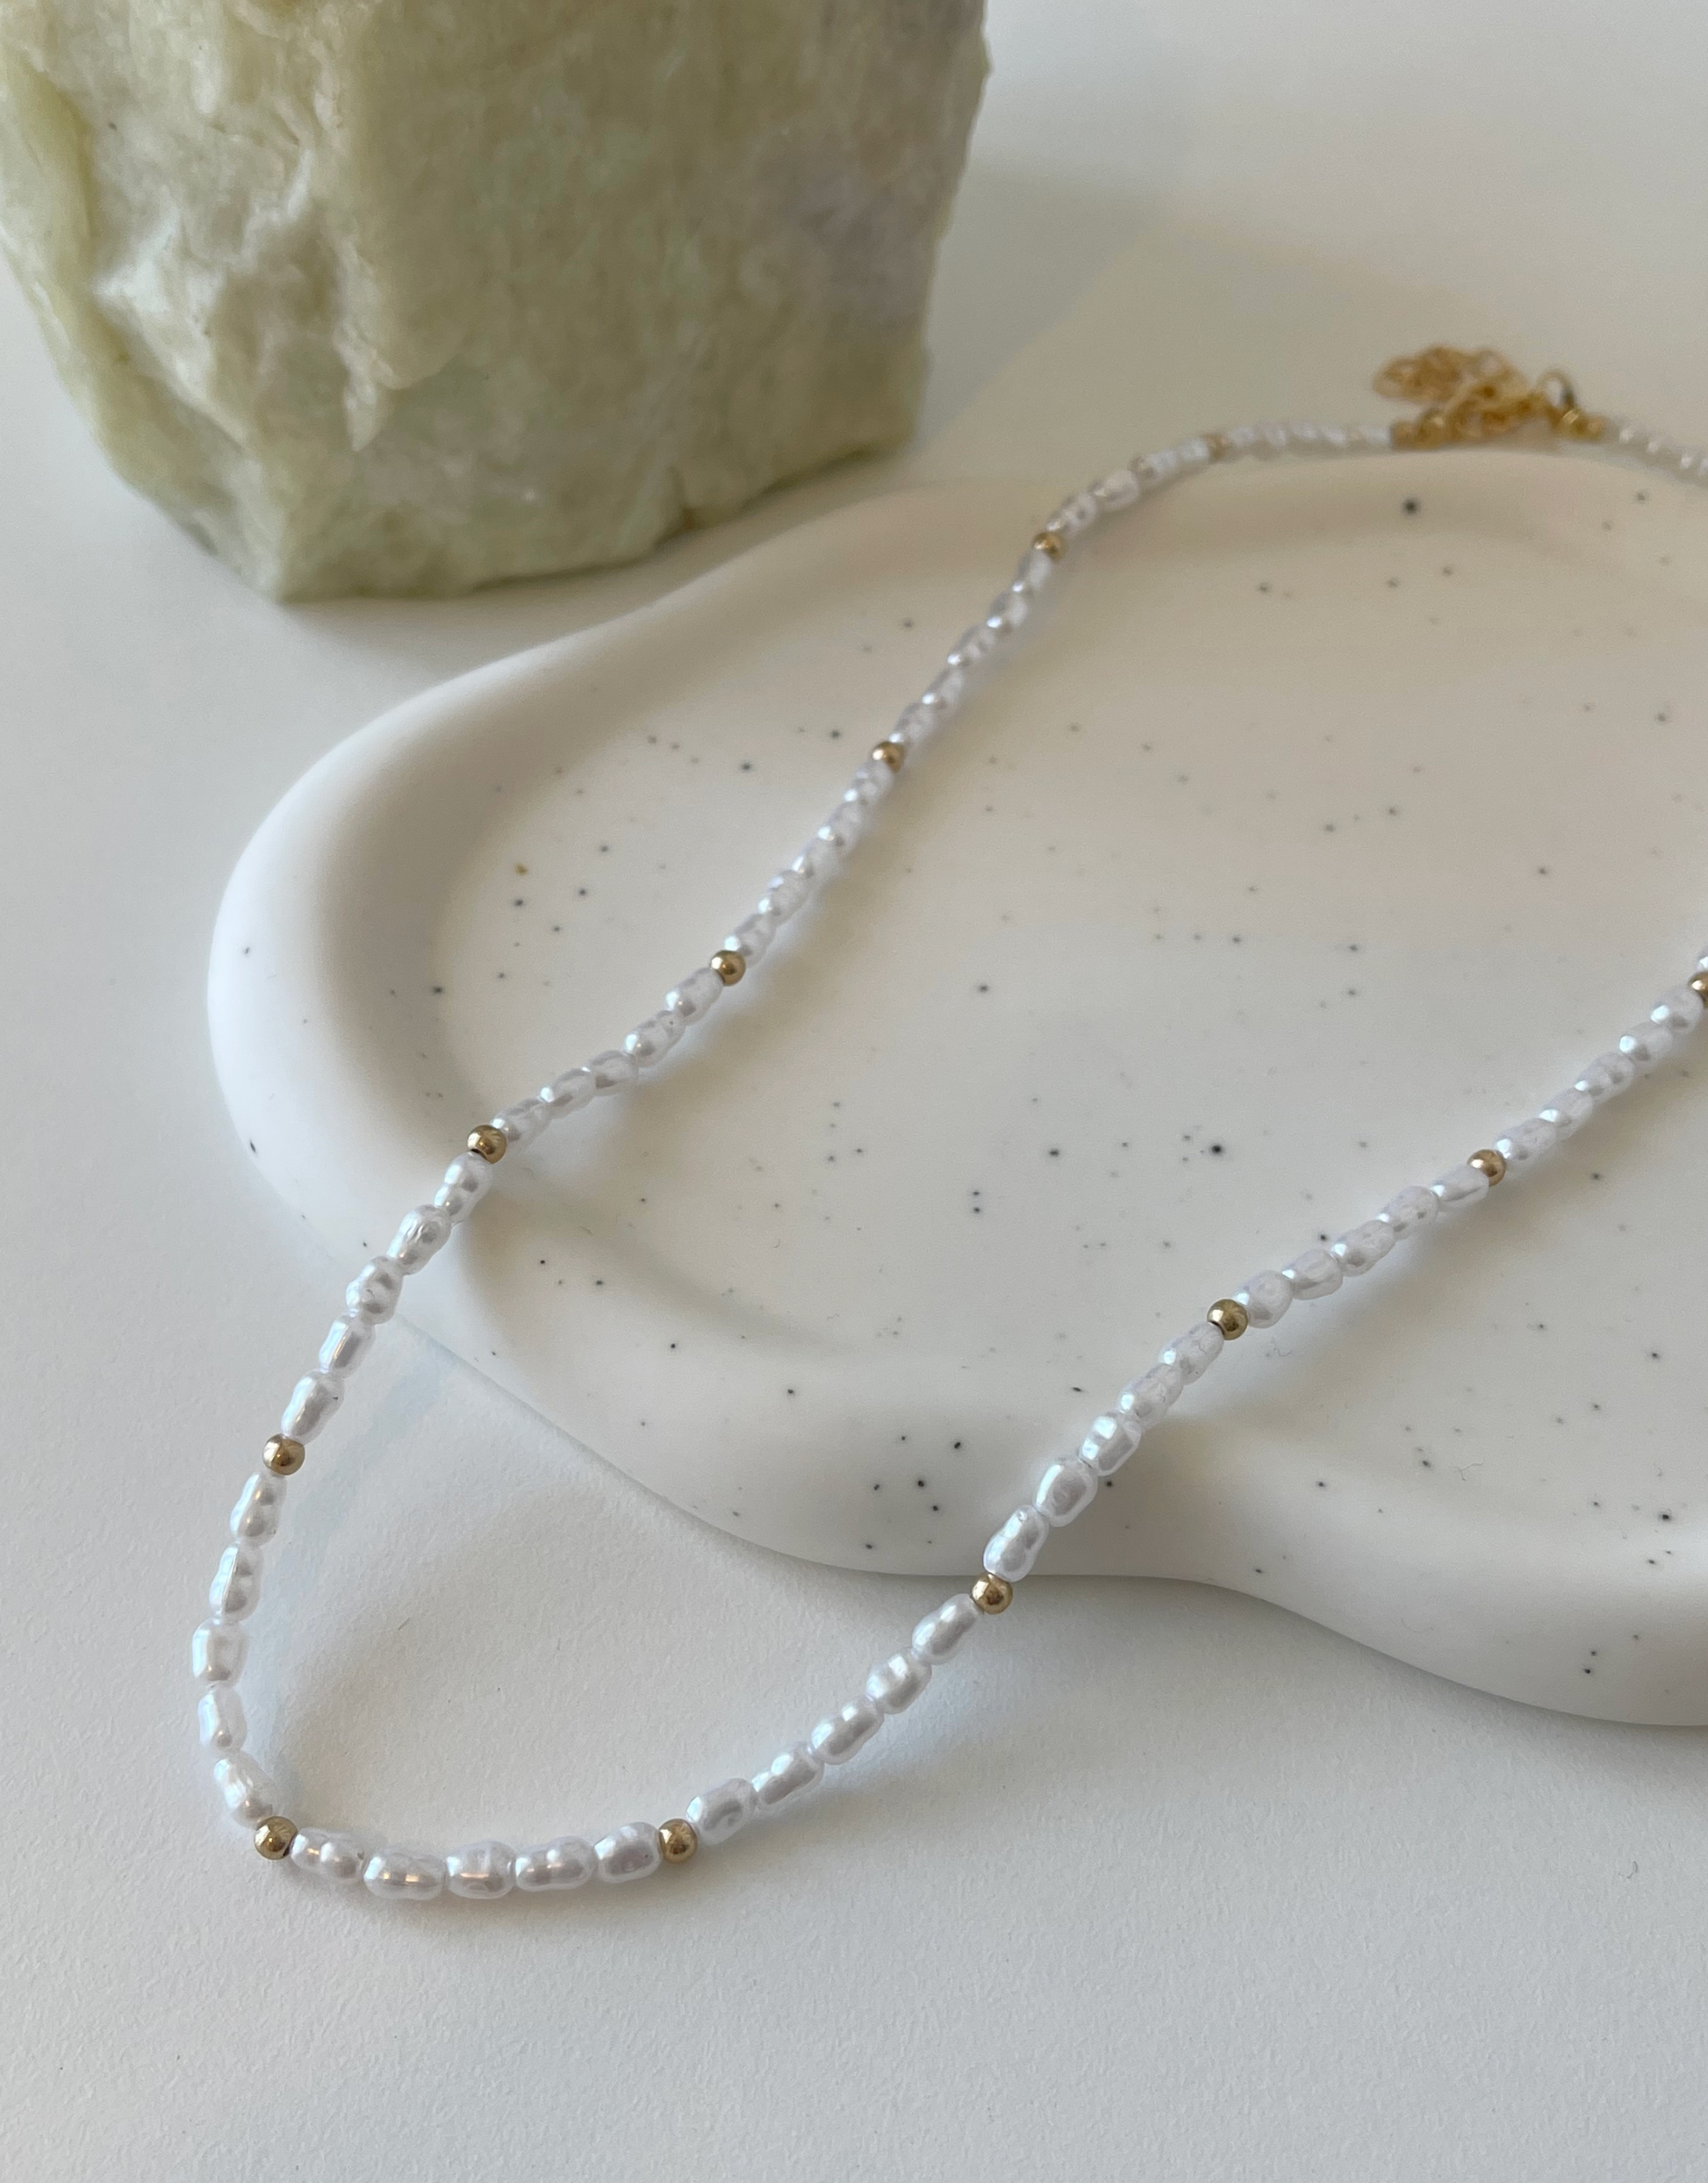 Sød halskæde fyldt med perler.  Denne halskæde er til dig, som elsker, at pifte dit look op med unikke smykker.   Materiale: Rustfri stål, guldbelagt. Perler. 100% nikkelfri.